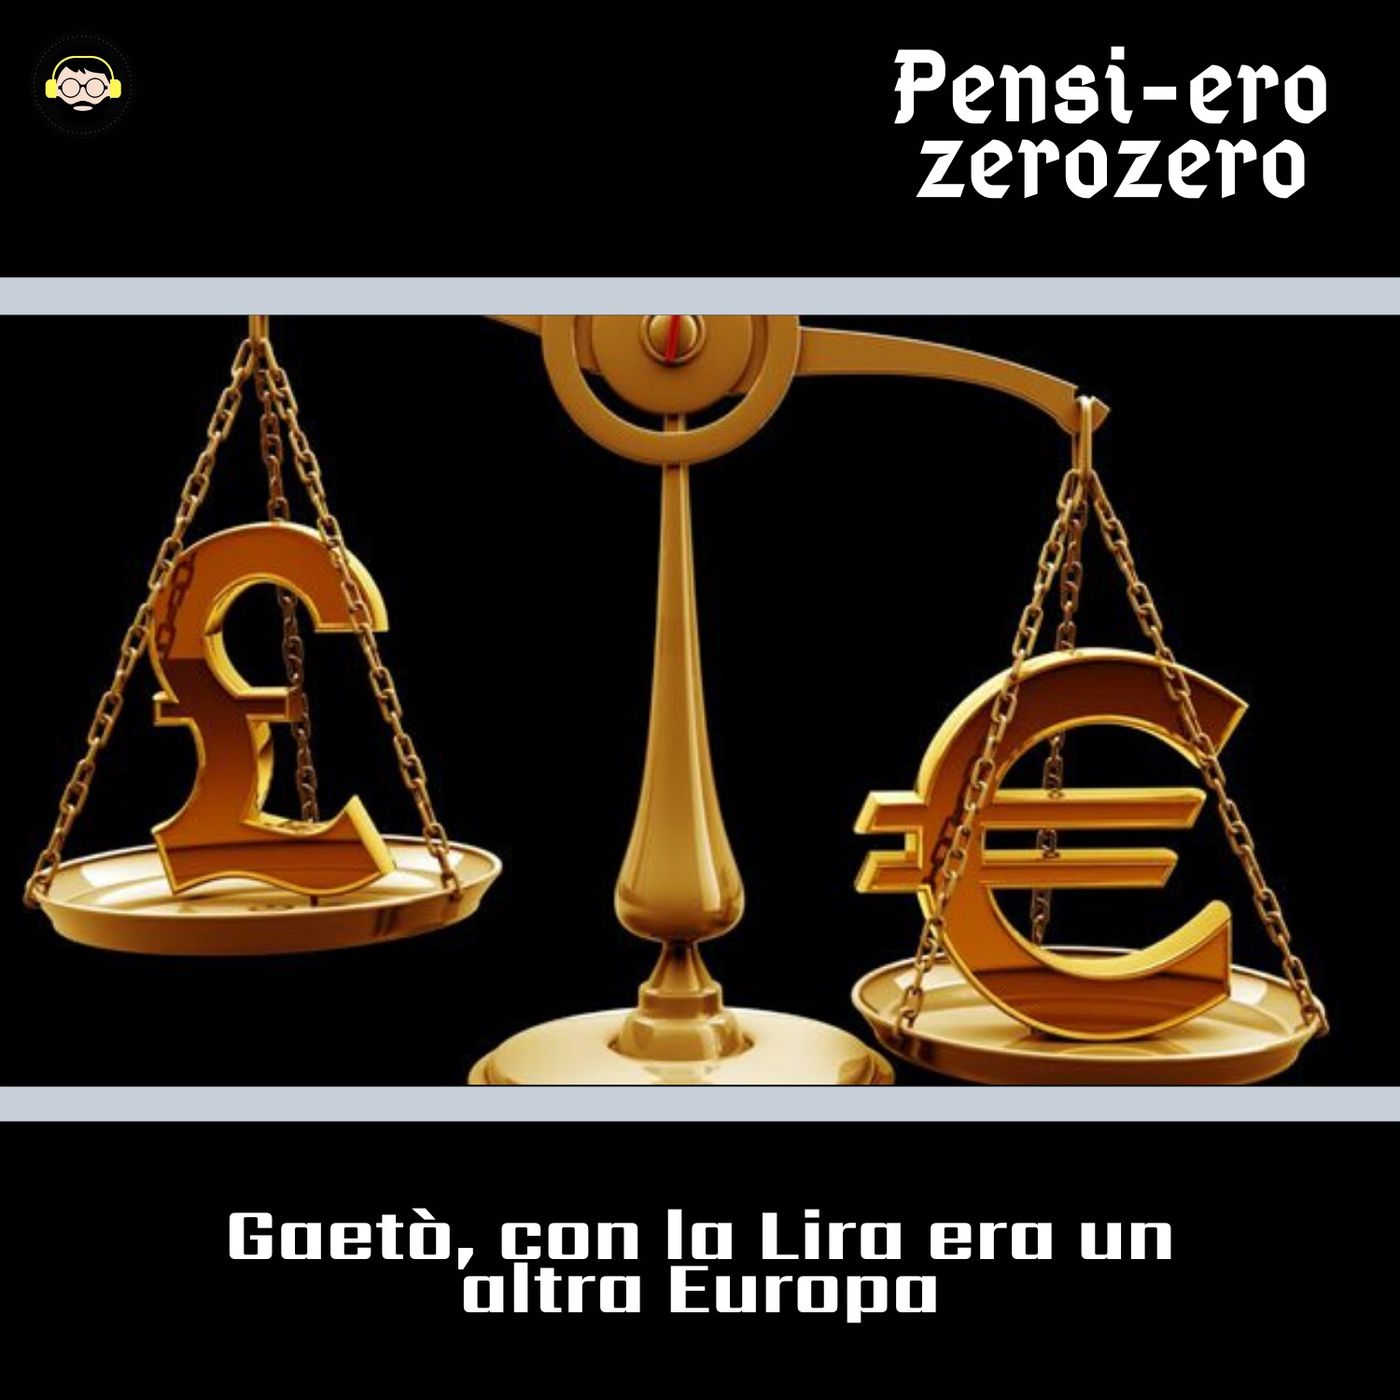 8. PENSI-EURO